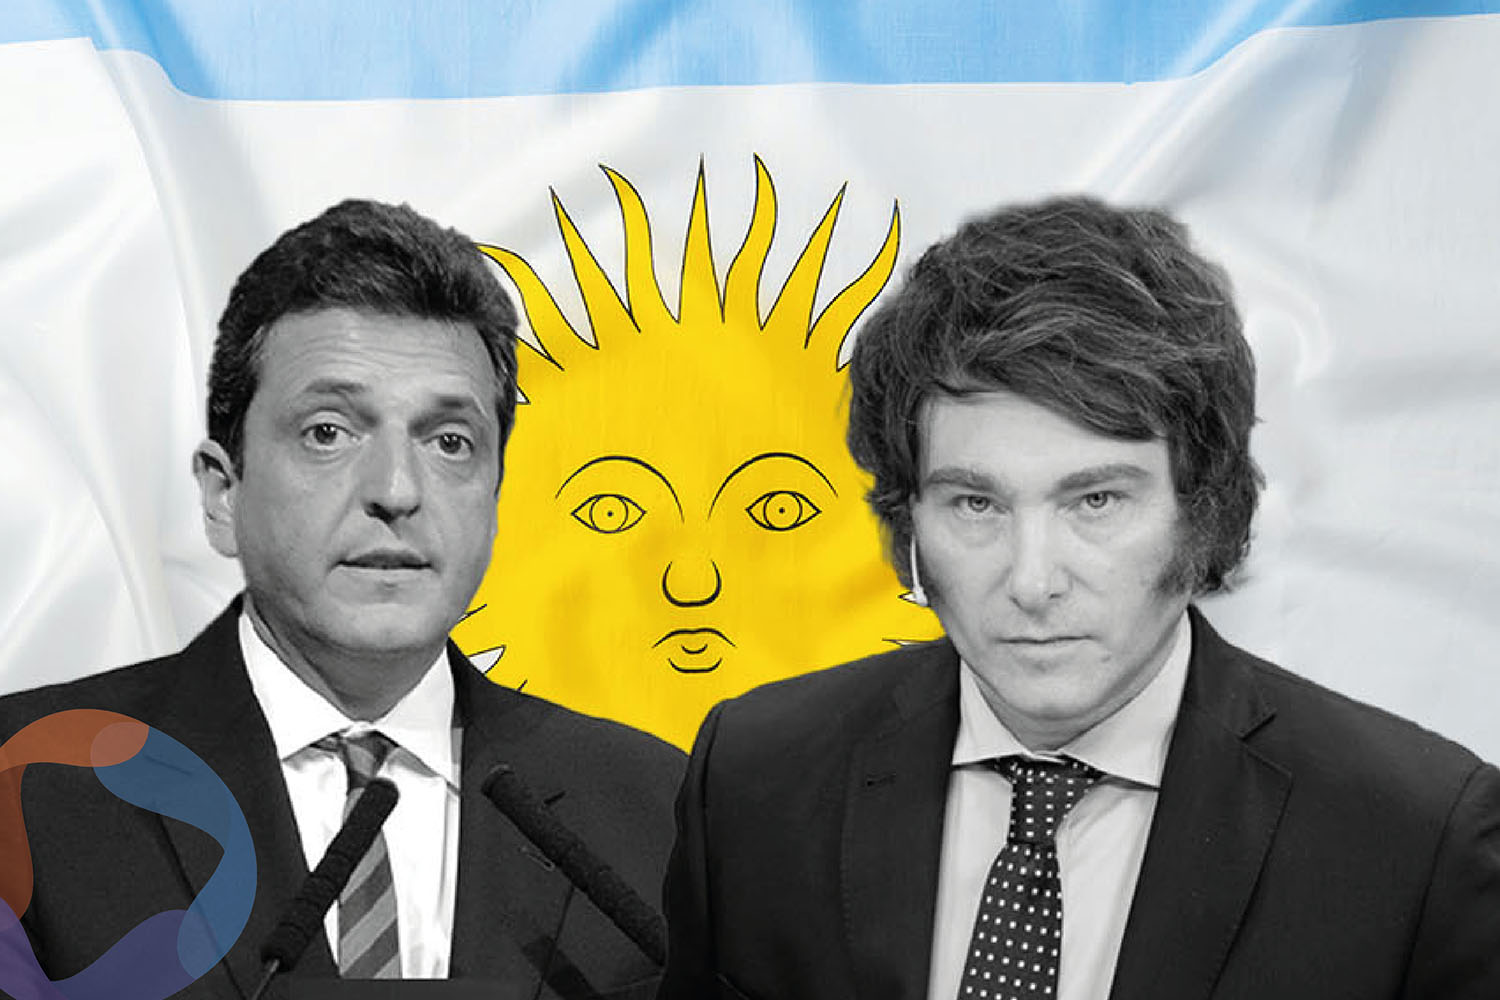 Elecciones en Argentina 2023: Bancos se preparan ante posible retiro masivo de pesos